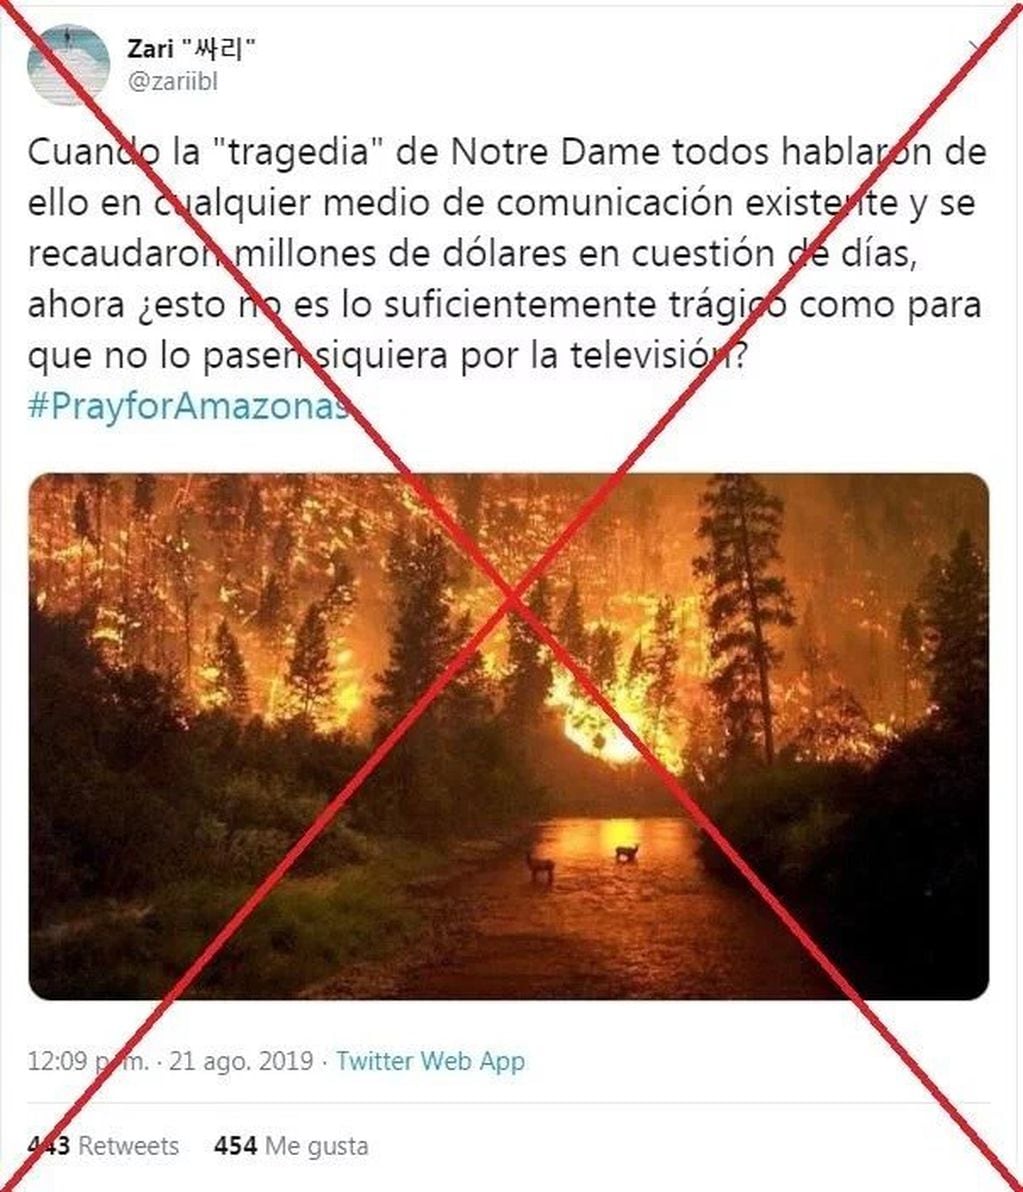 Las fotos falsas del incendio en el Amazonas (Web)